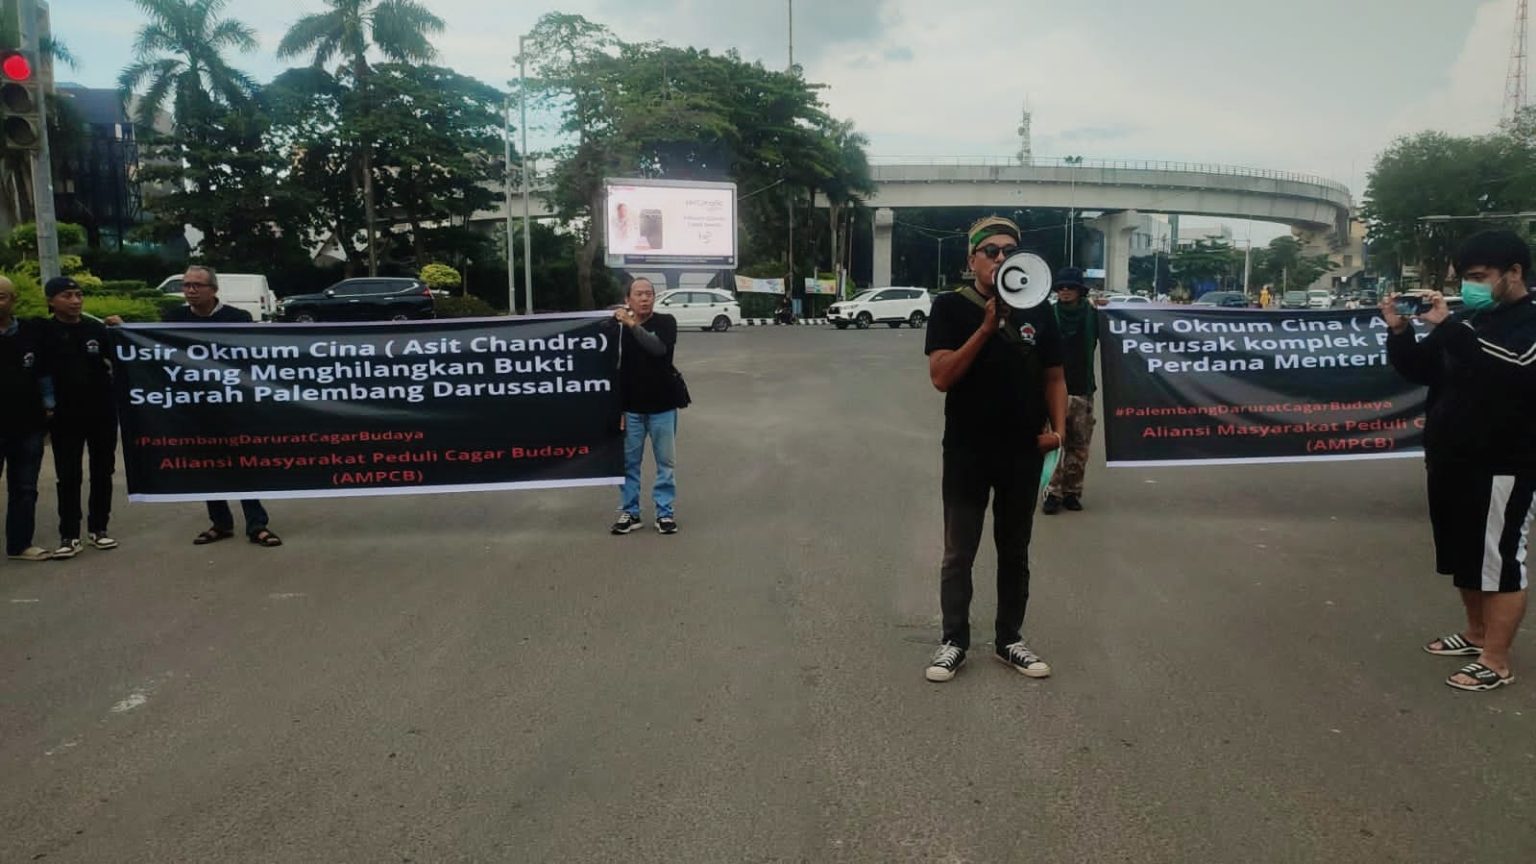 AMPCB: Dibeli 'Aseng' Selamatkan Cagar Budaya Pemakaman Kramo Jayo